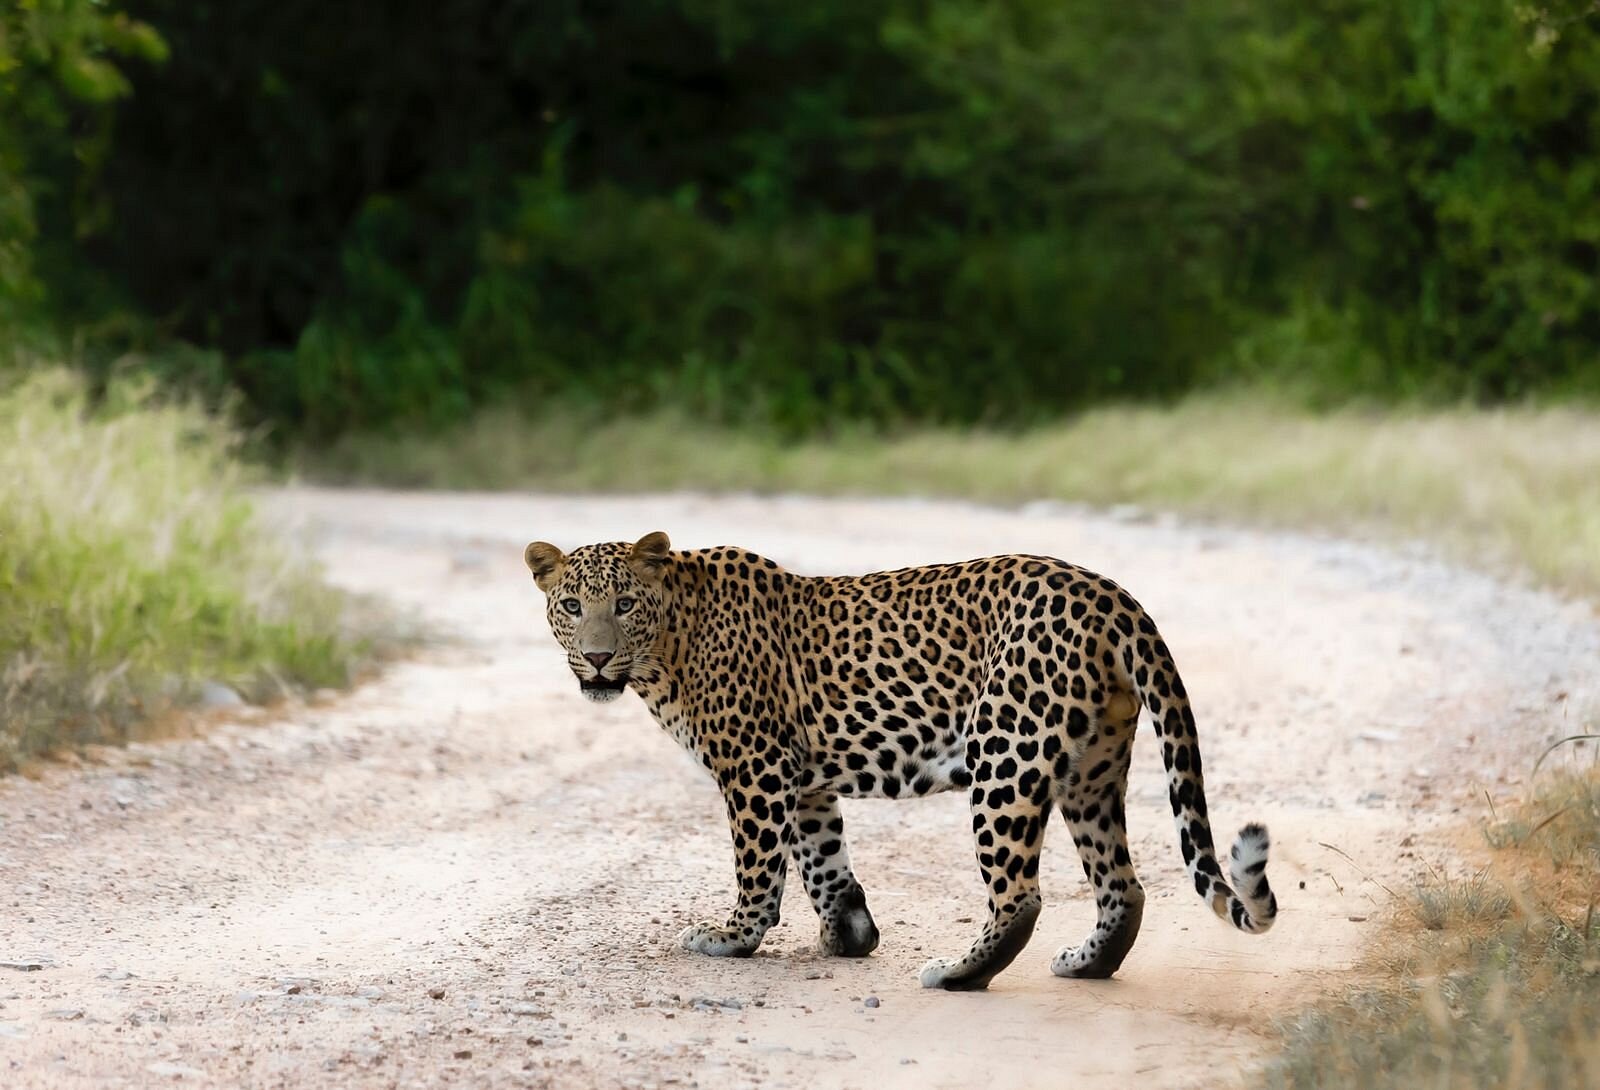 jhalana leopard safari blog